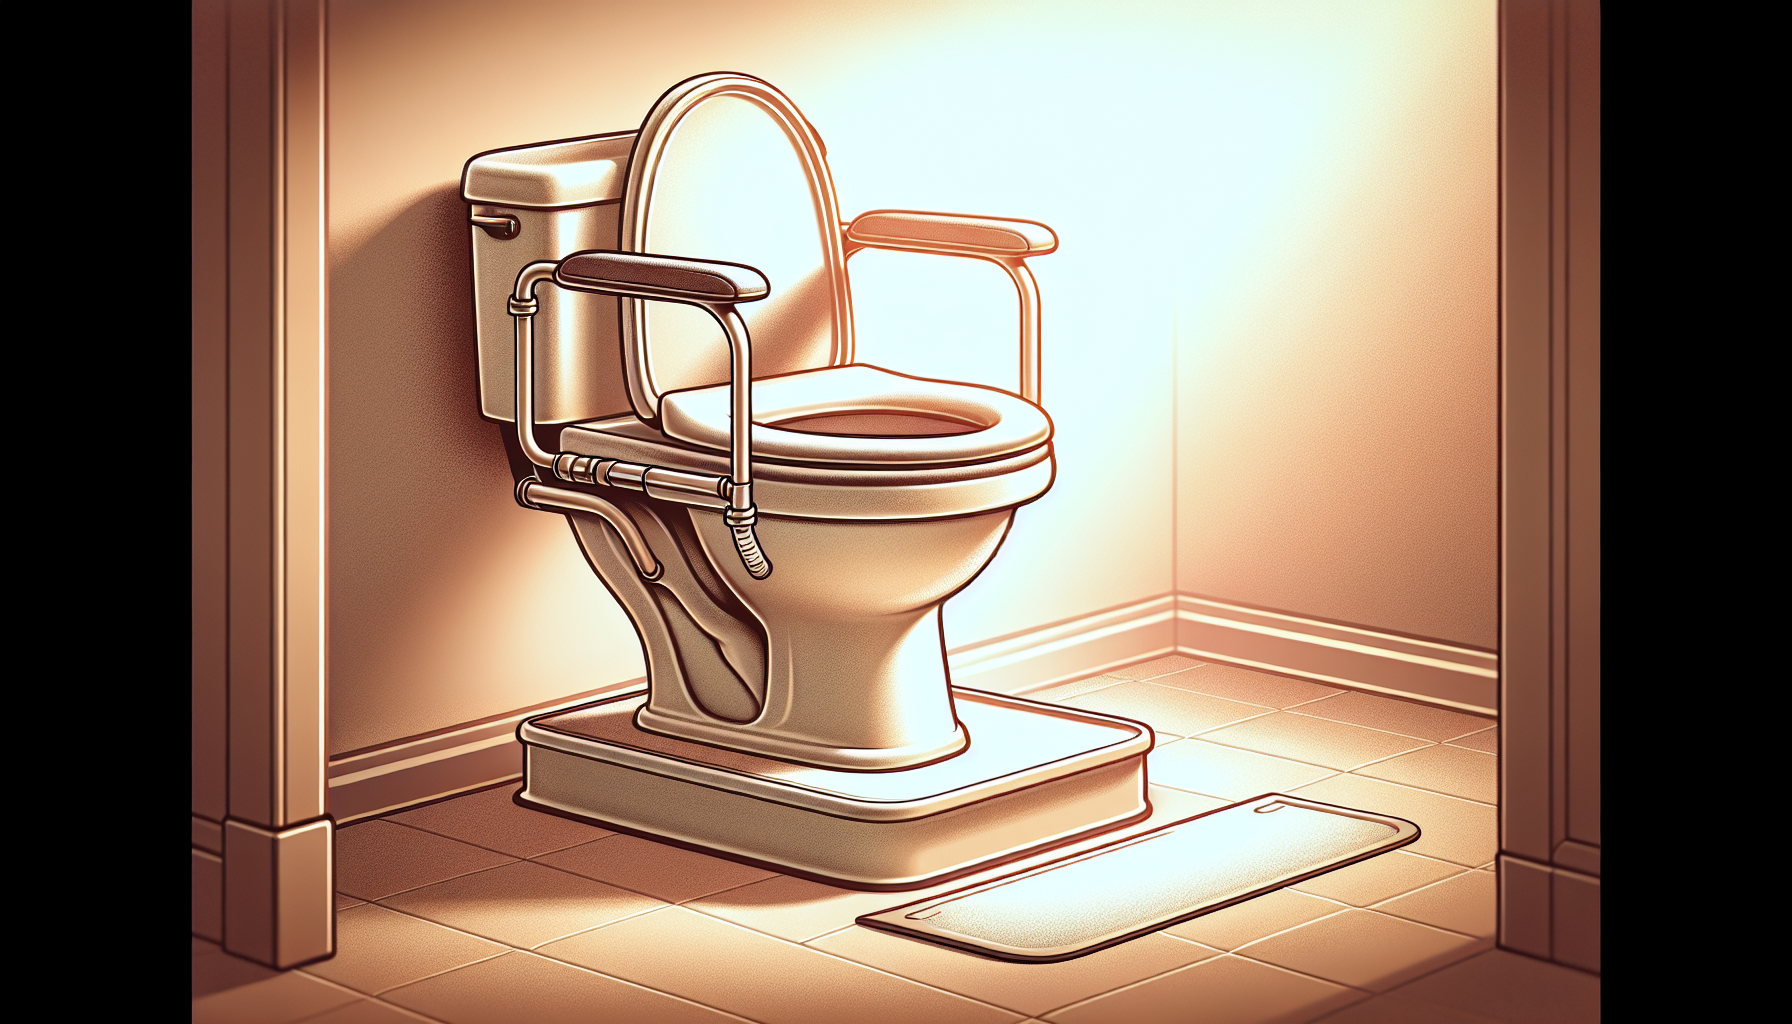 Illustration einer erhöhten Toilette für mehr Komfort und Sicherheit